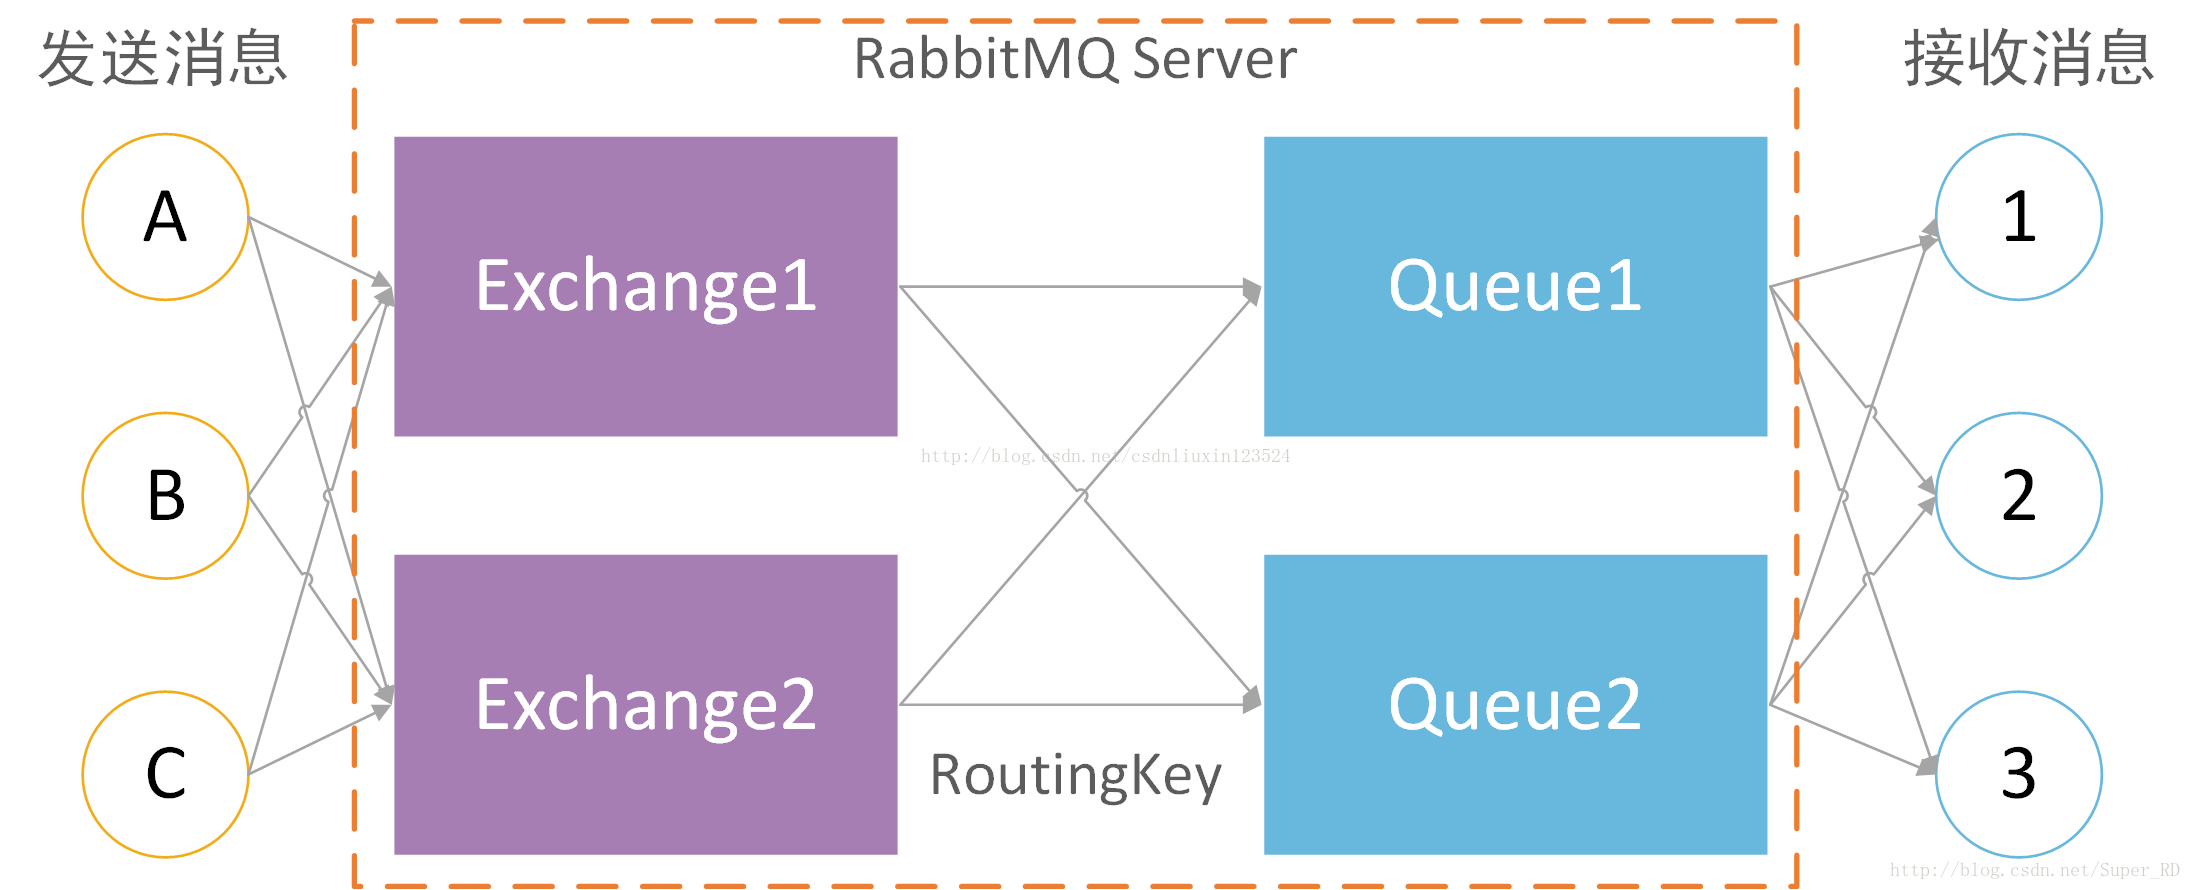 CentOS6.5下RabbitMQ安装3 mq使用原理和使用原因